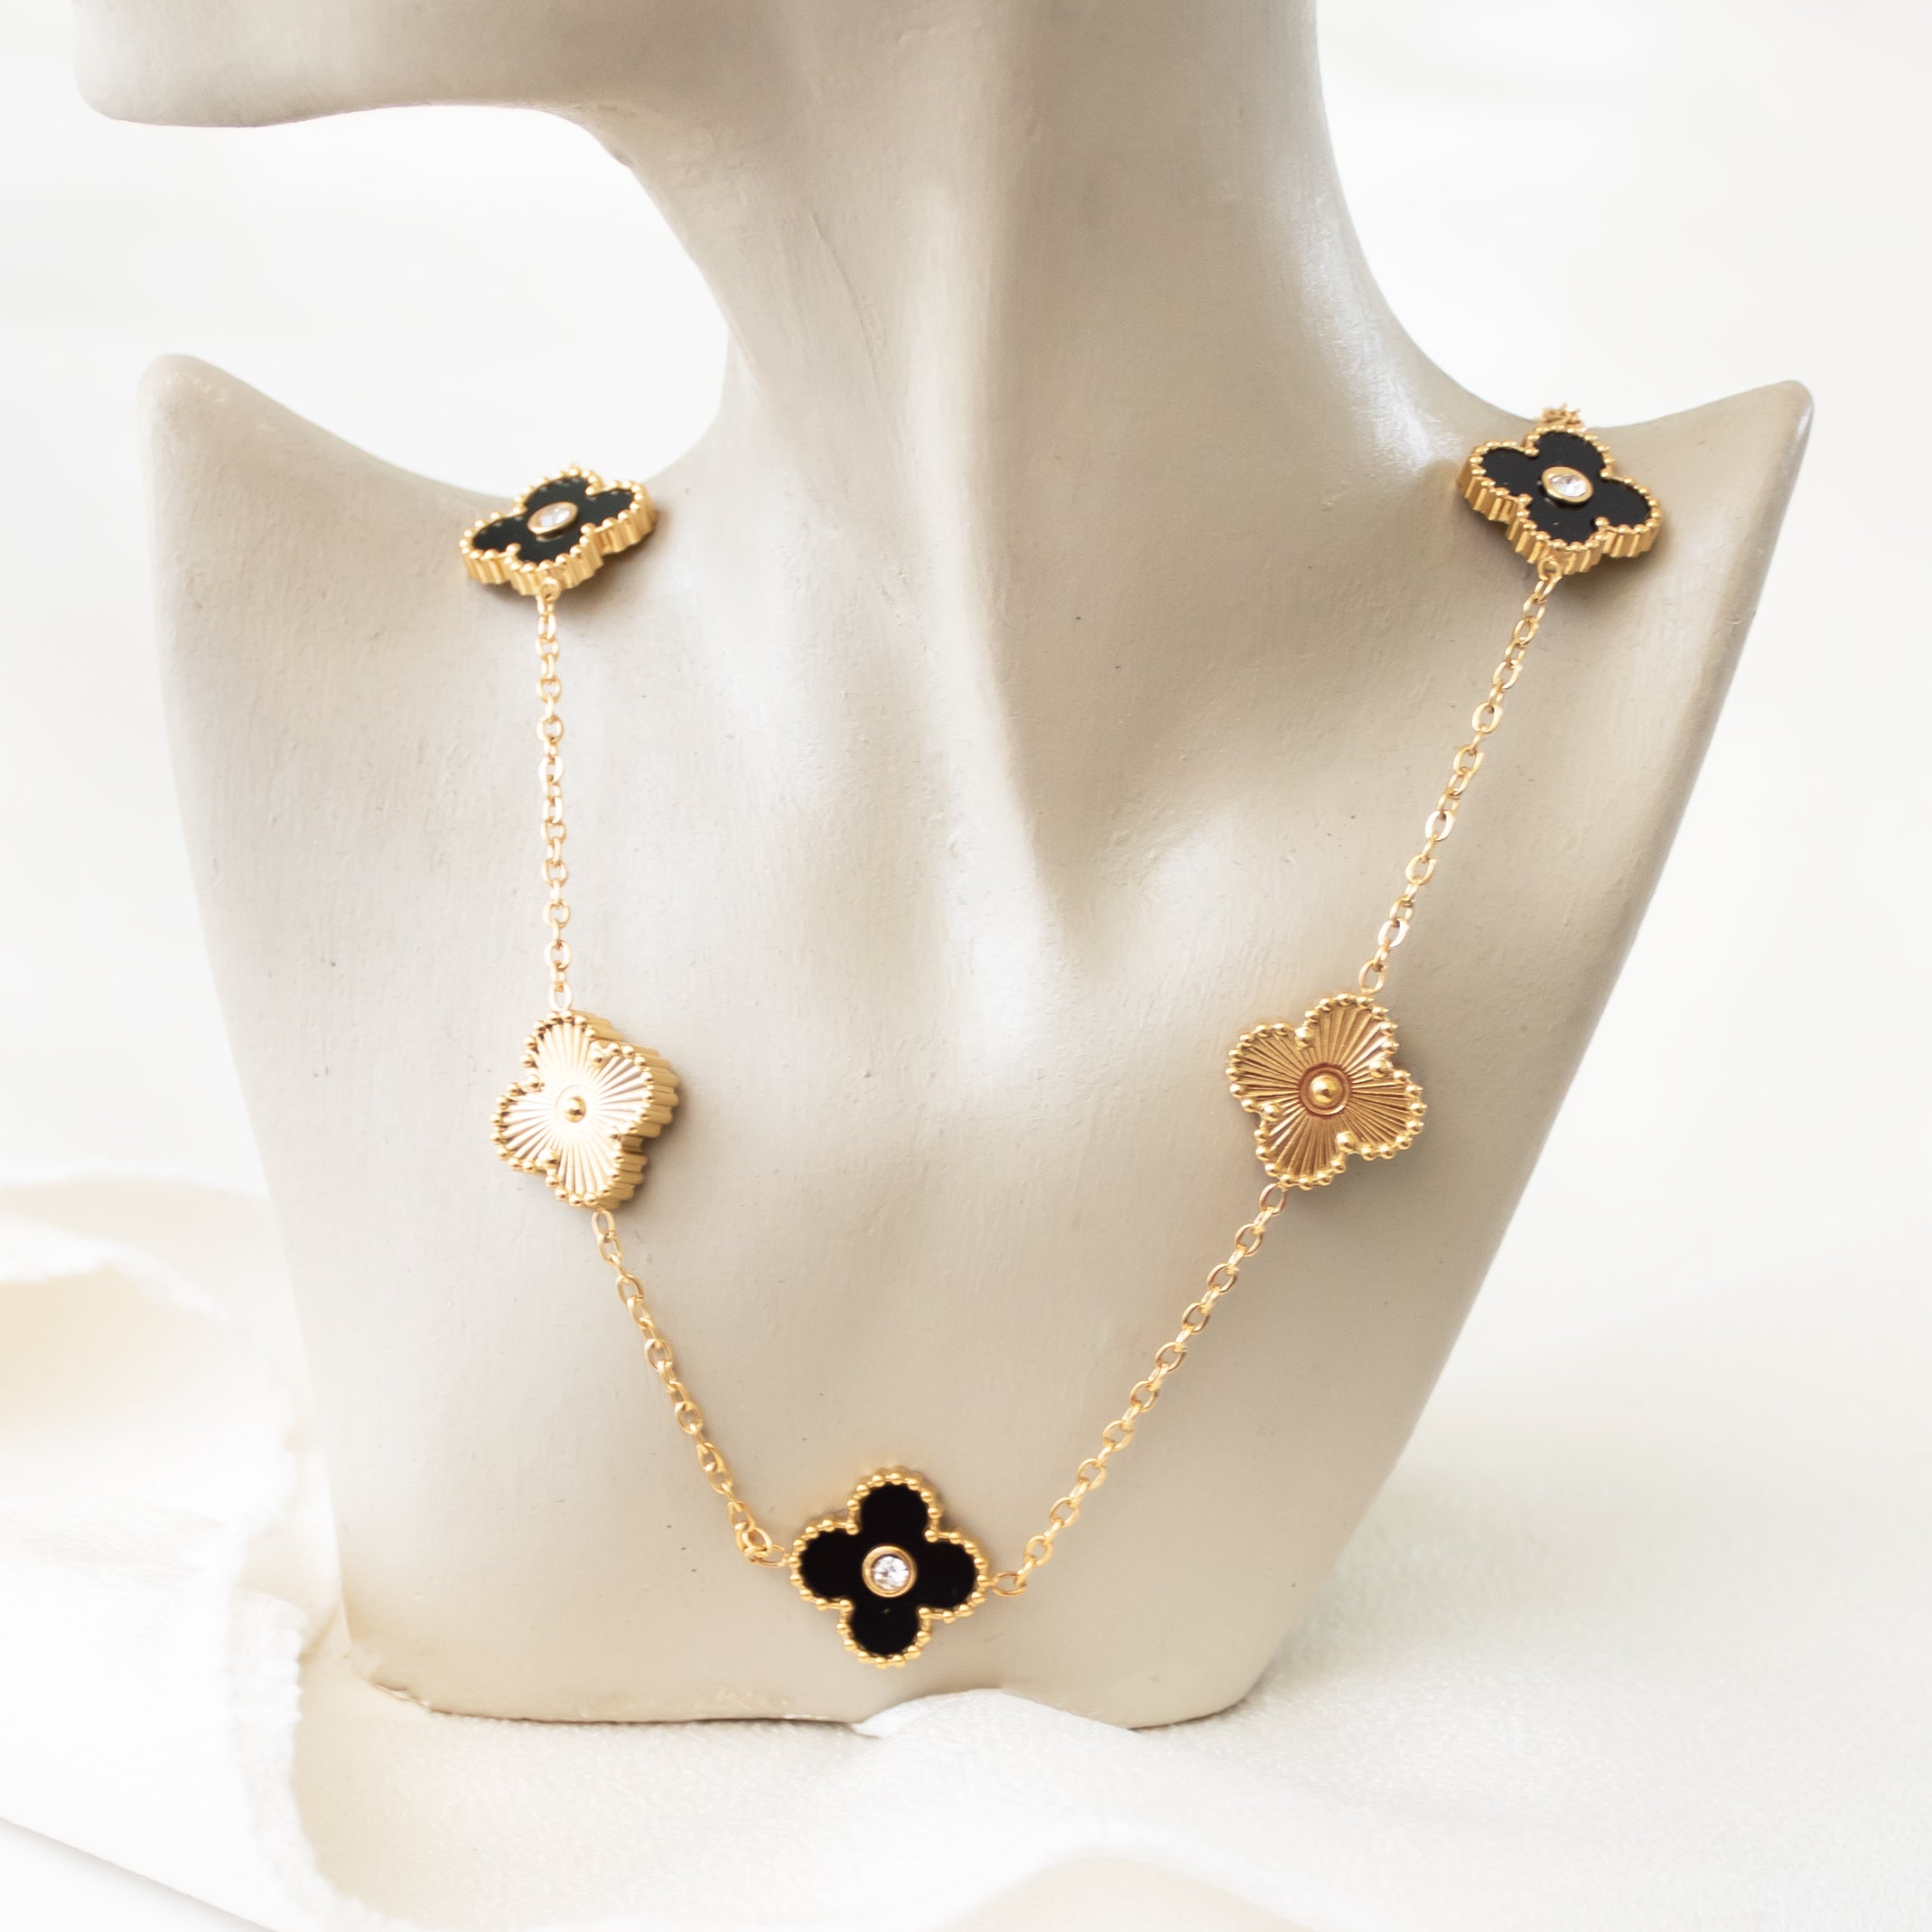 Black & Gold Clover Necklace